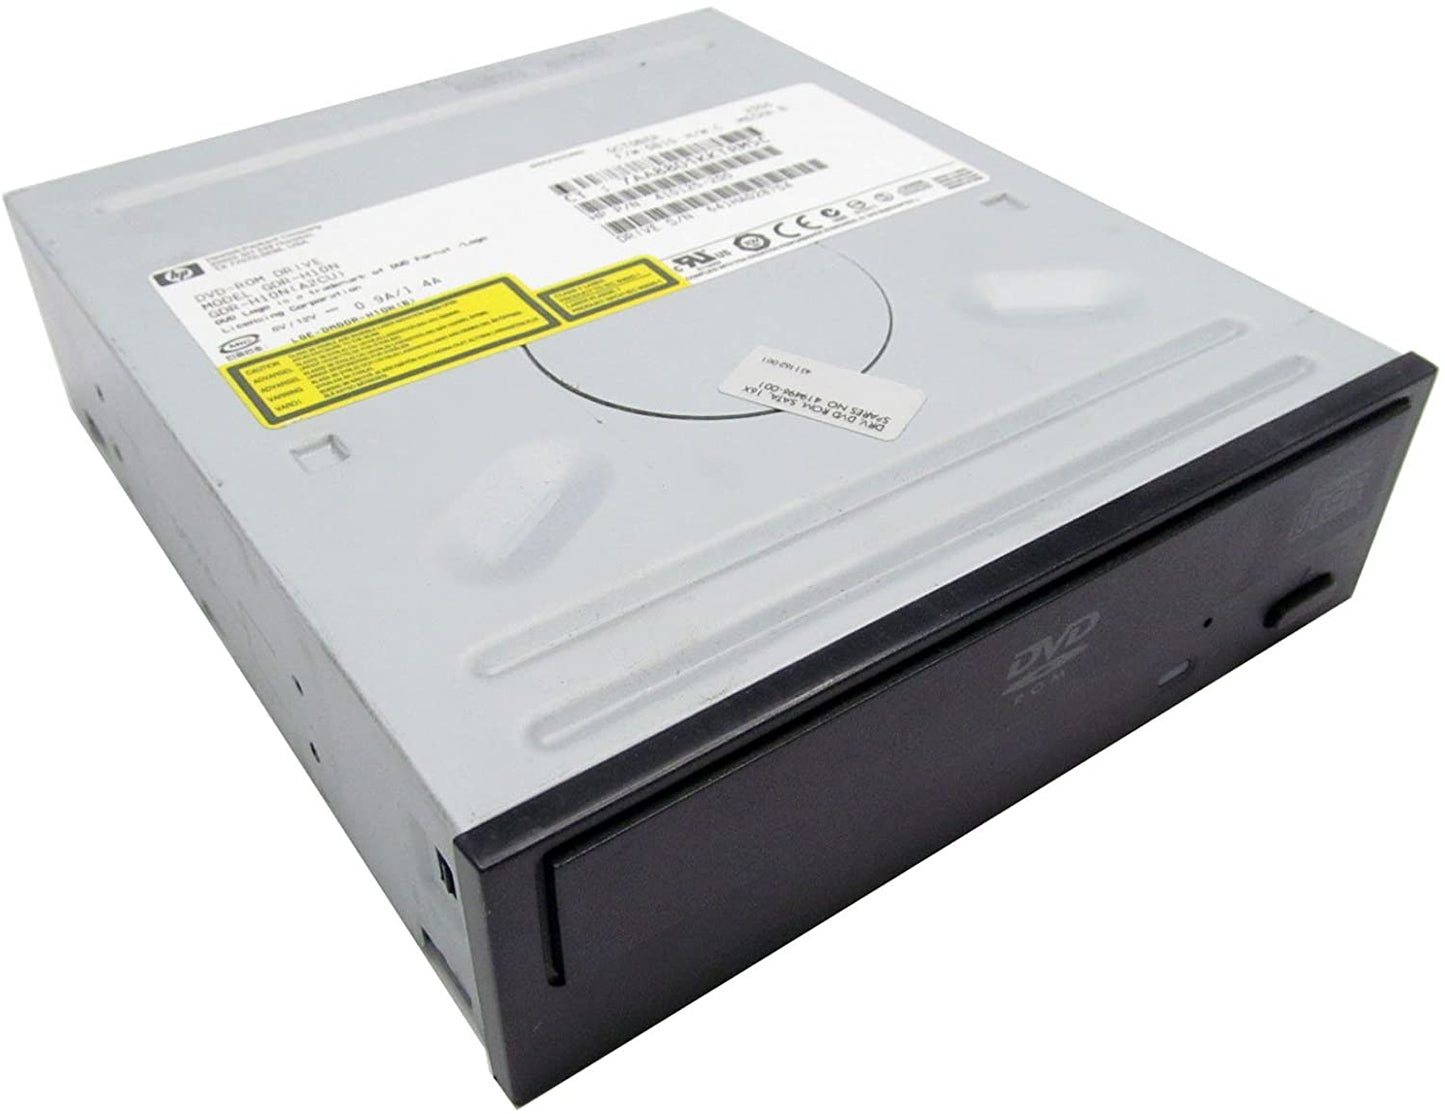 HP DVD-Rom Drive 410125-200 - Rekes Sales